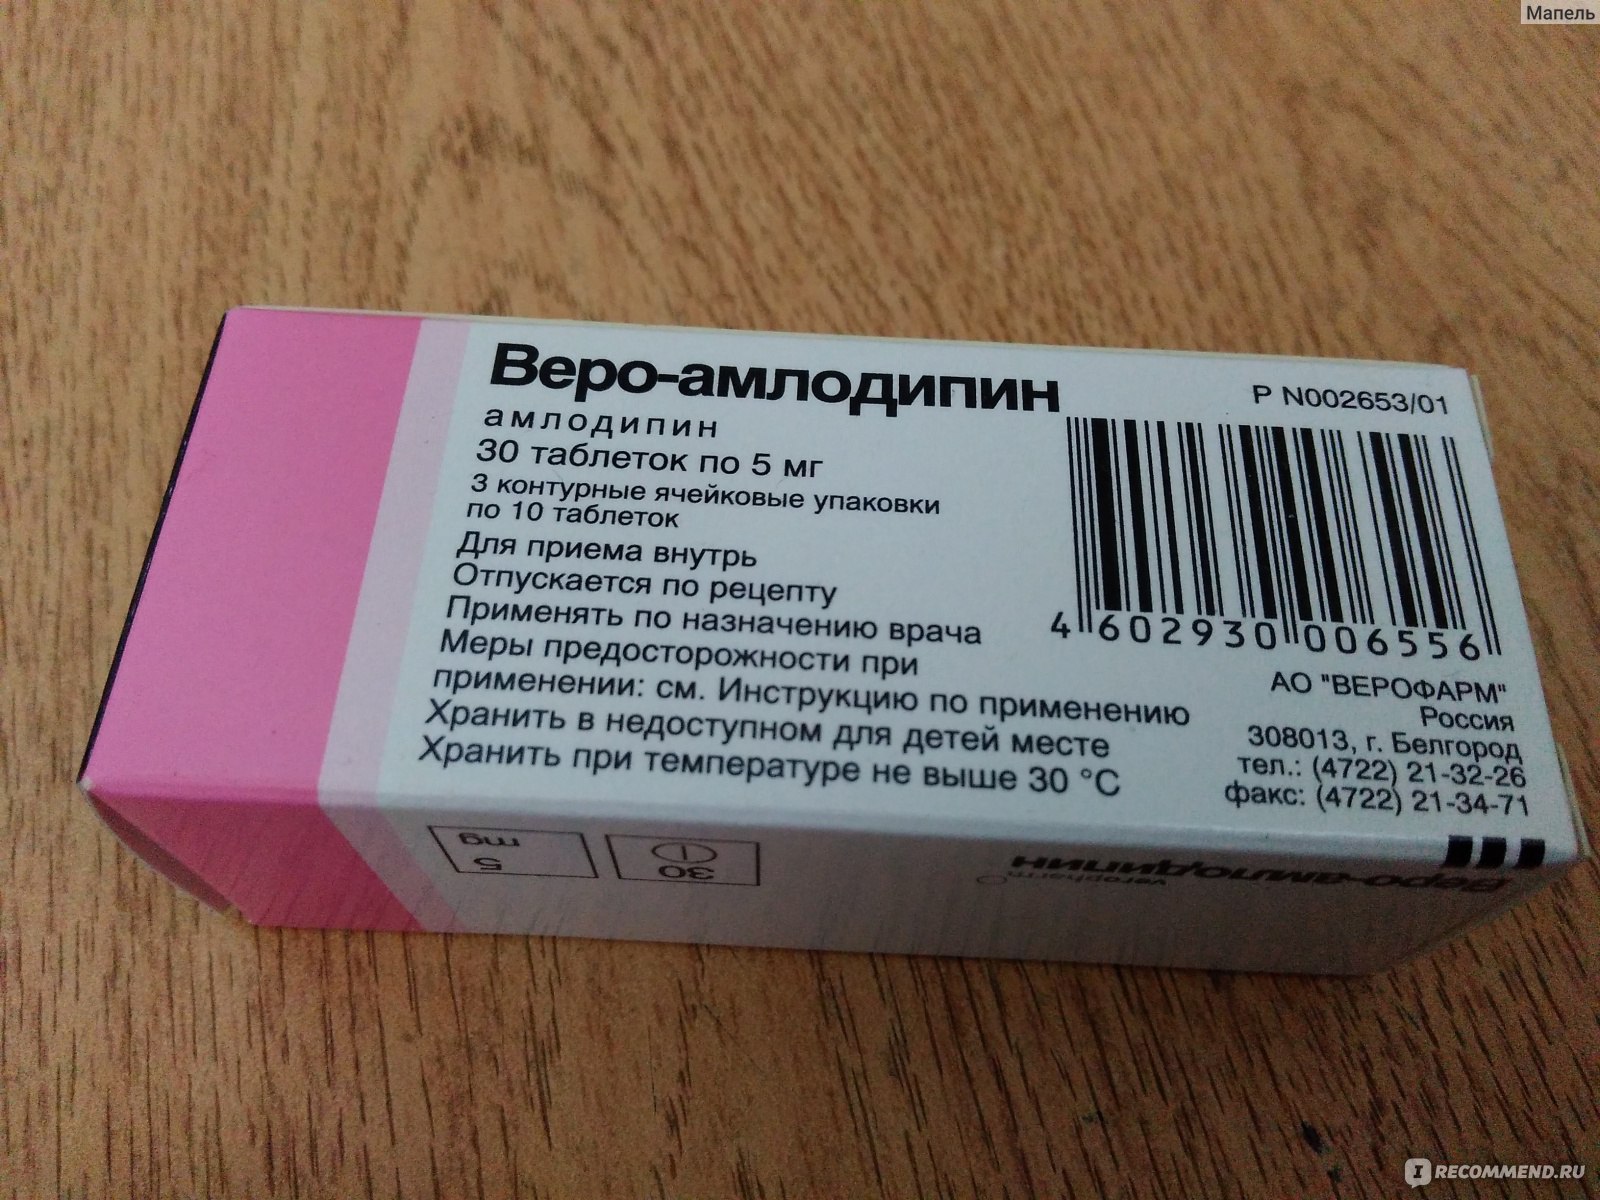 Как правильно принимать амлодипин. Таблетки от давления розового цвета. Таблетки для понижения давления амлодипин. Таблетки для понижения давления розовые. Таблетки от давления повышенного амлодипин.